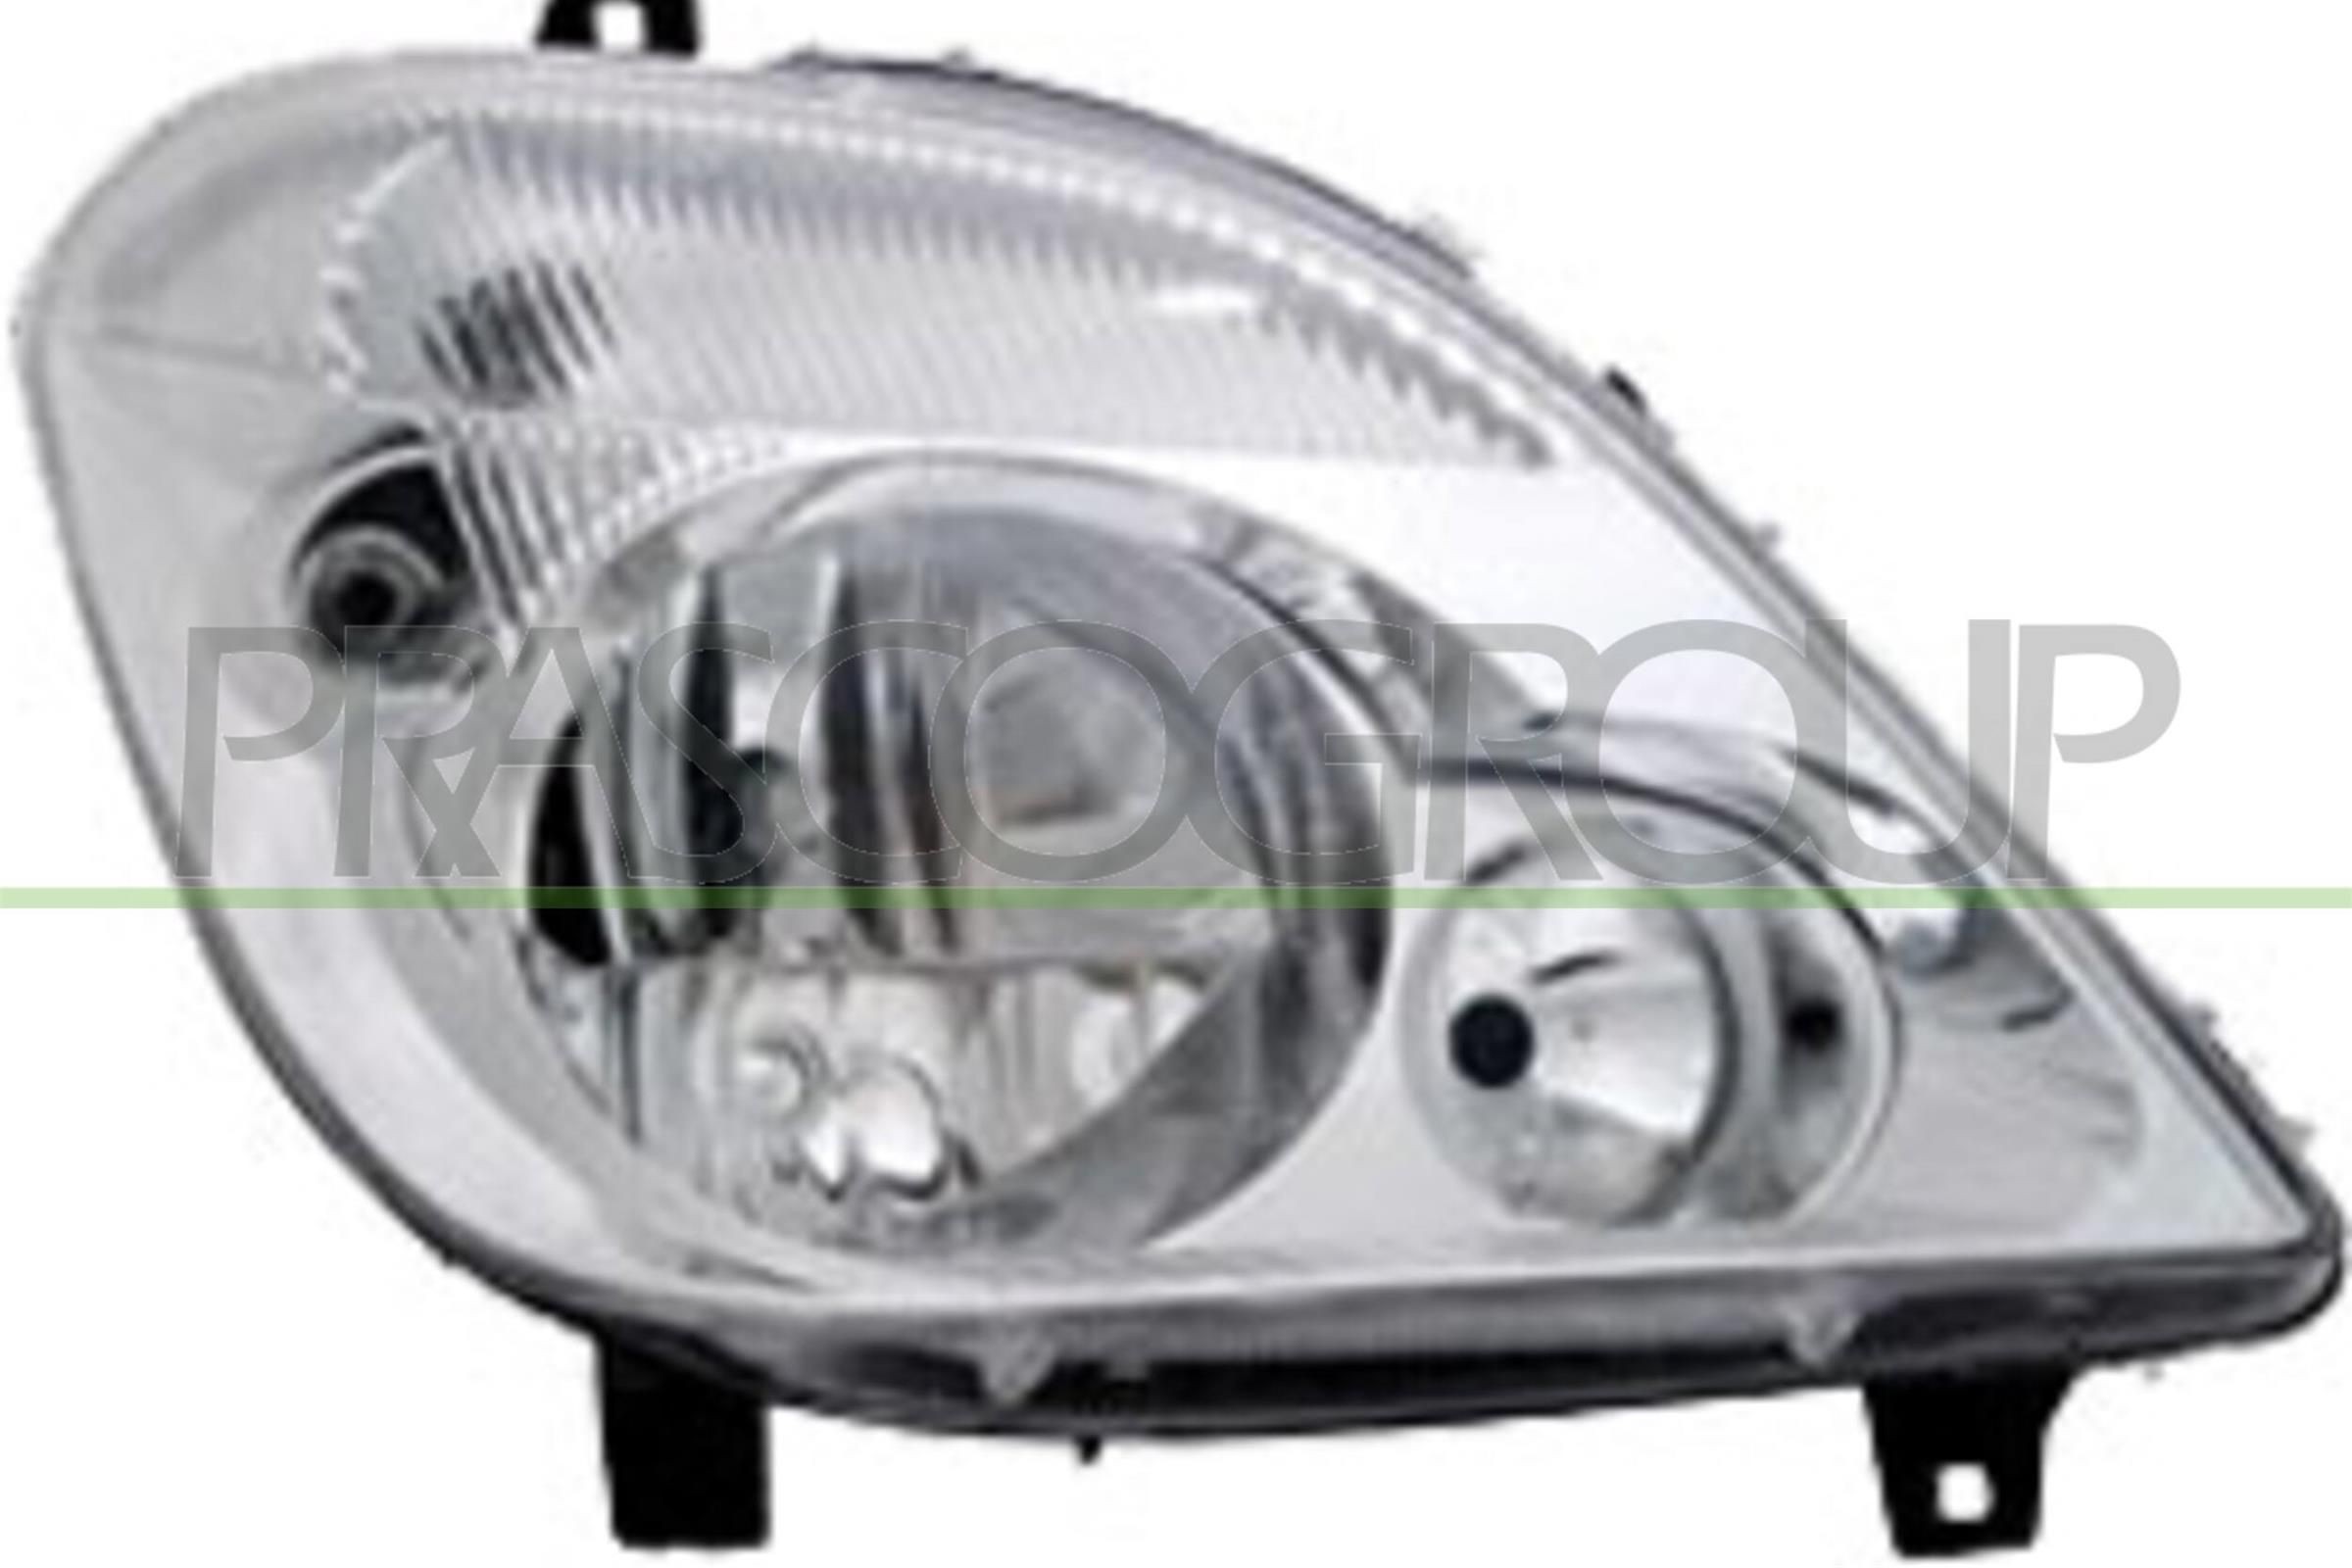 Original ME9194903 PRASCO Headlights experience and price